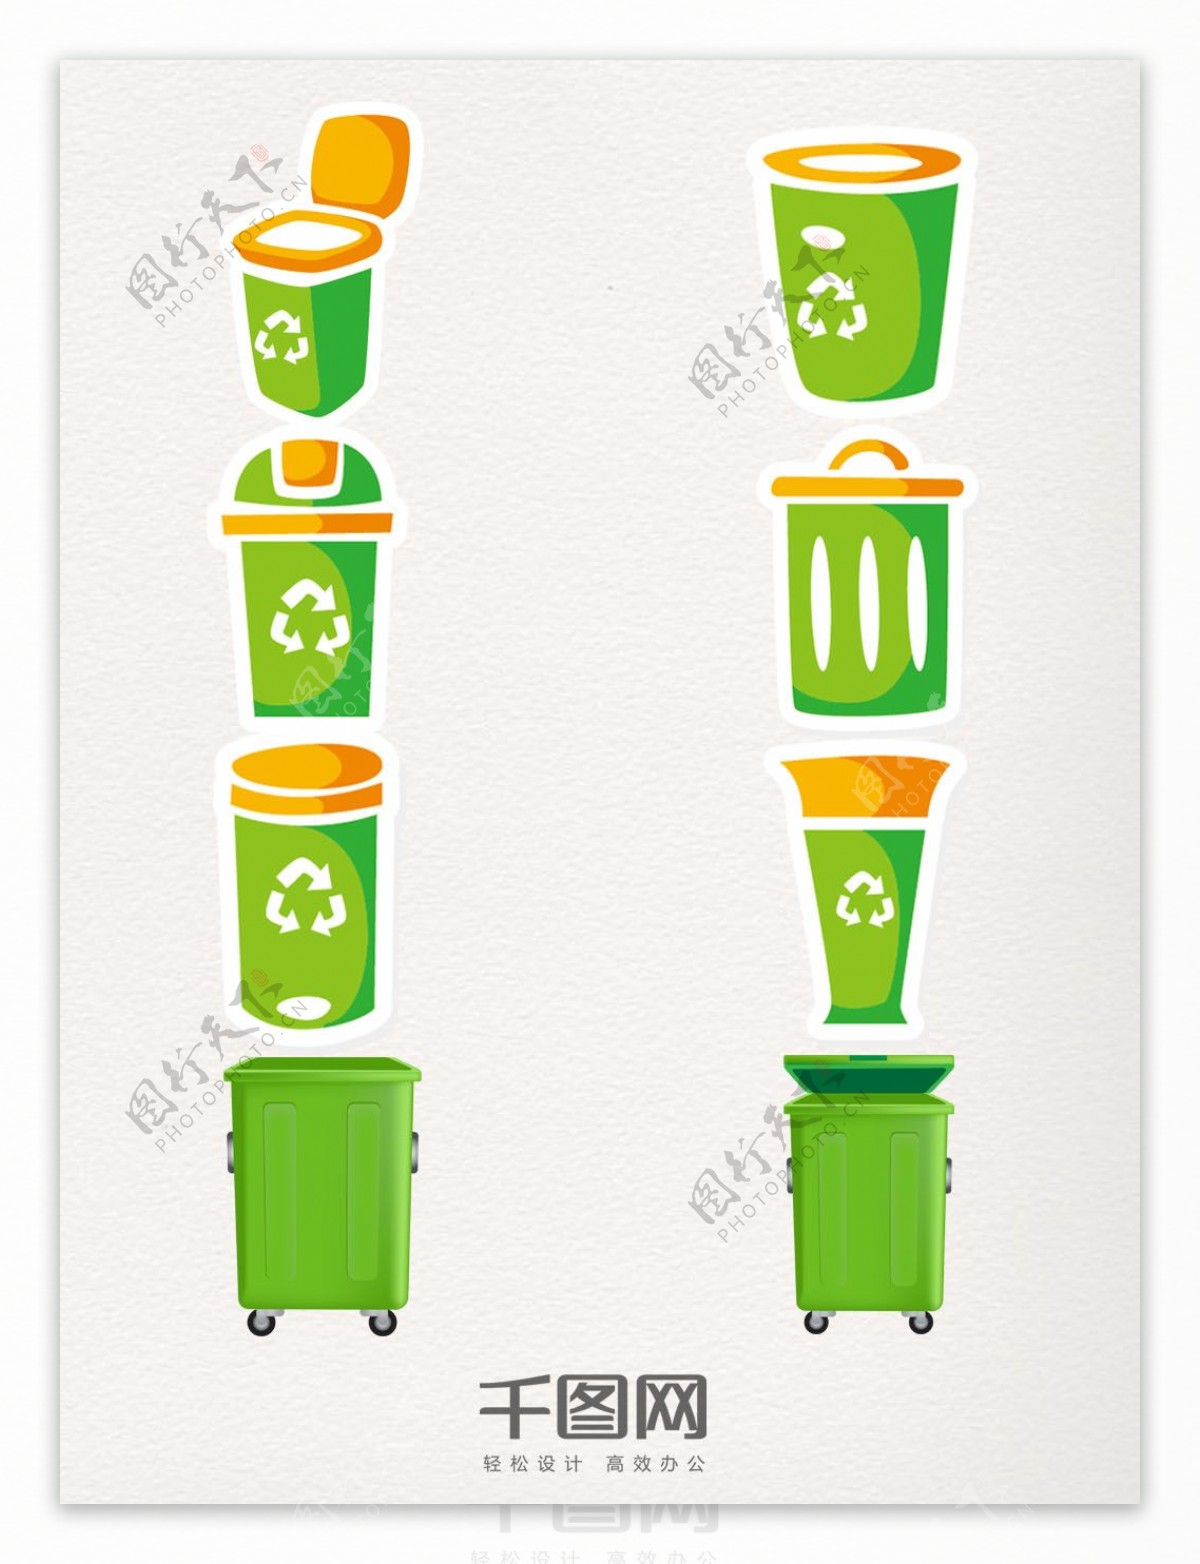 绿色环保垃圾桶图案